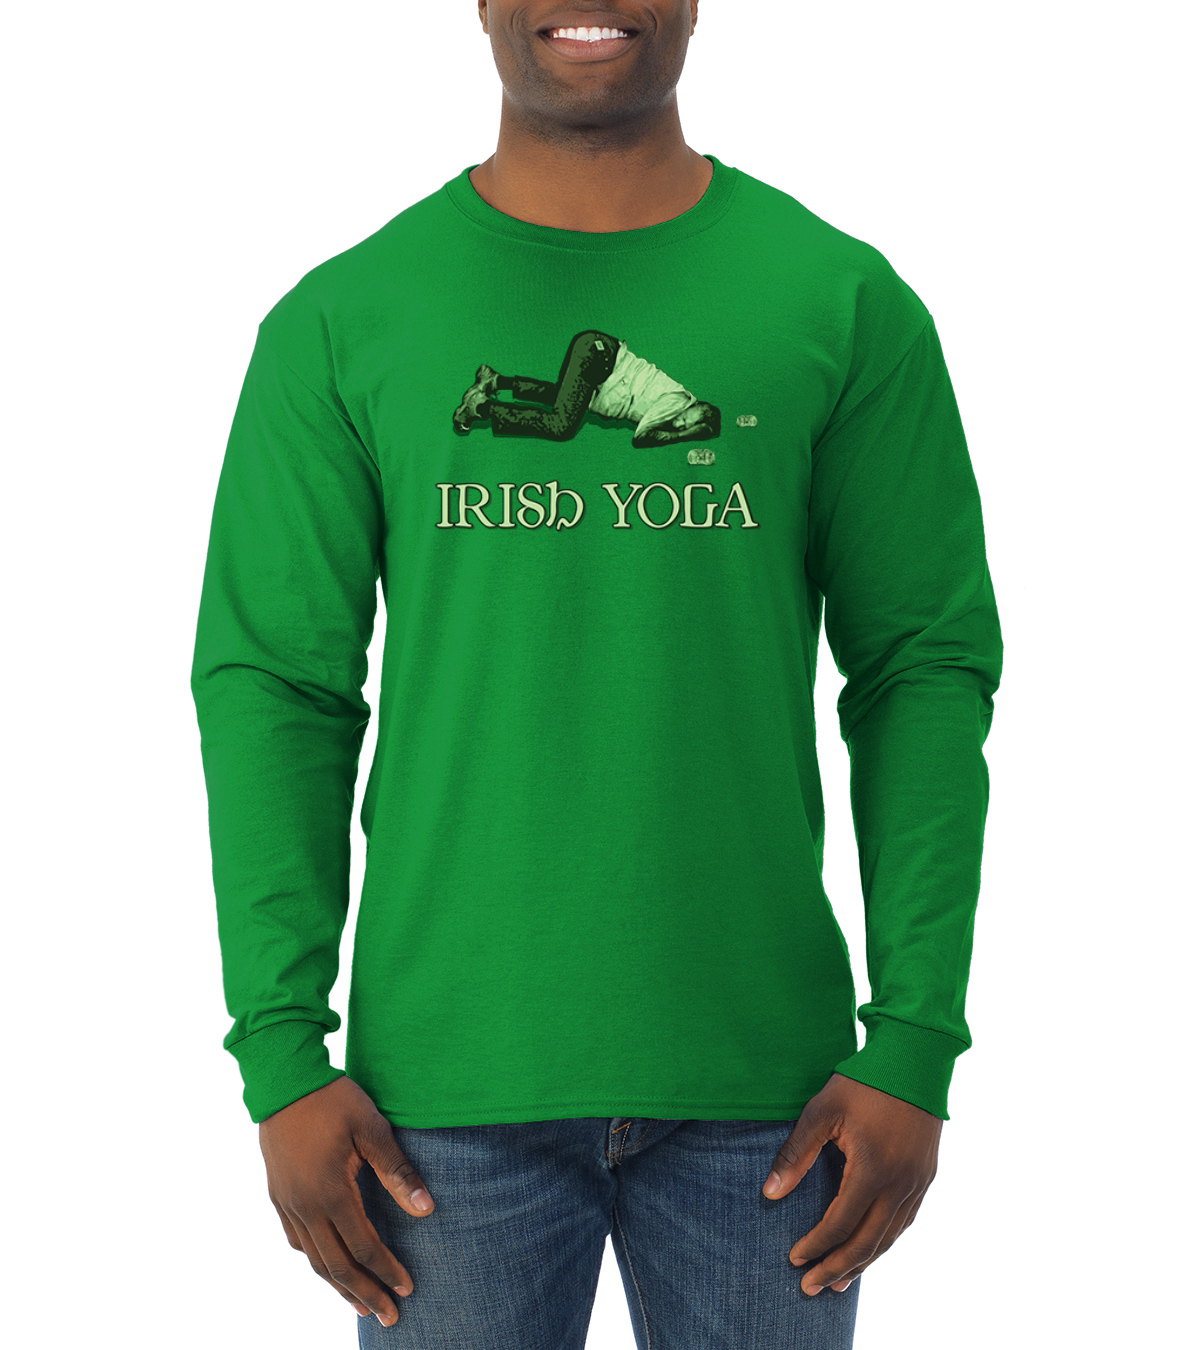 Irish Yoga Novelty Long Sleeve Shirt - Unisex St. Patrick's Day Shirt